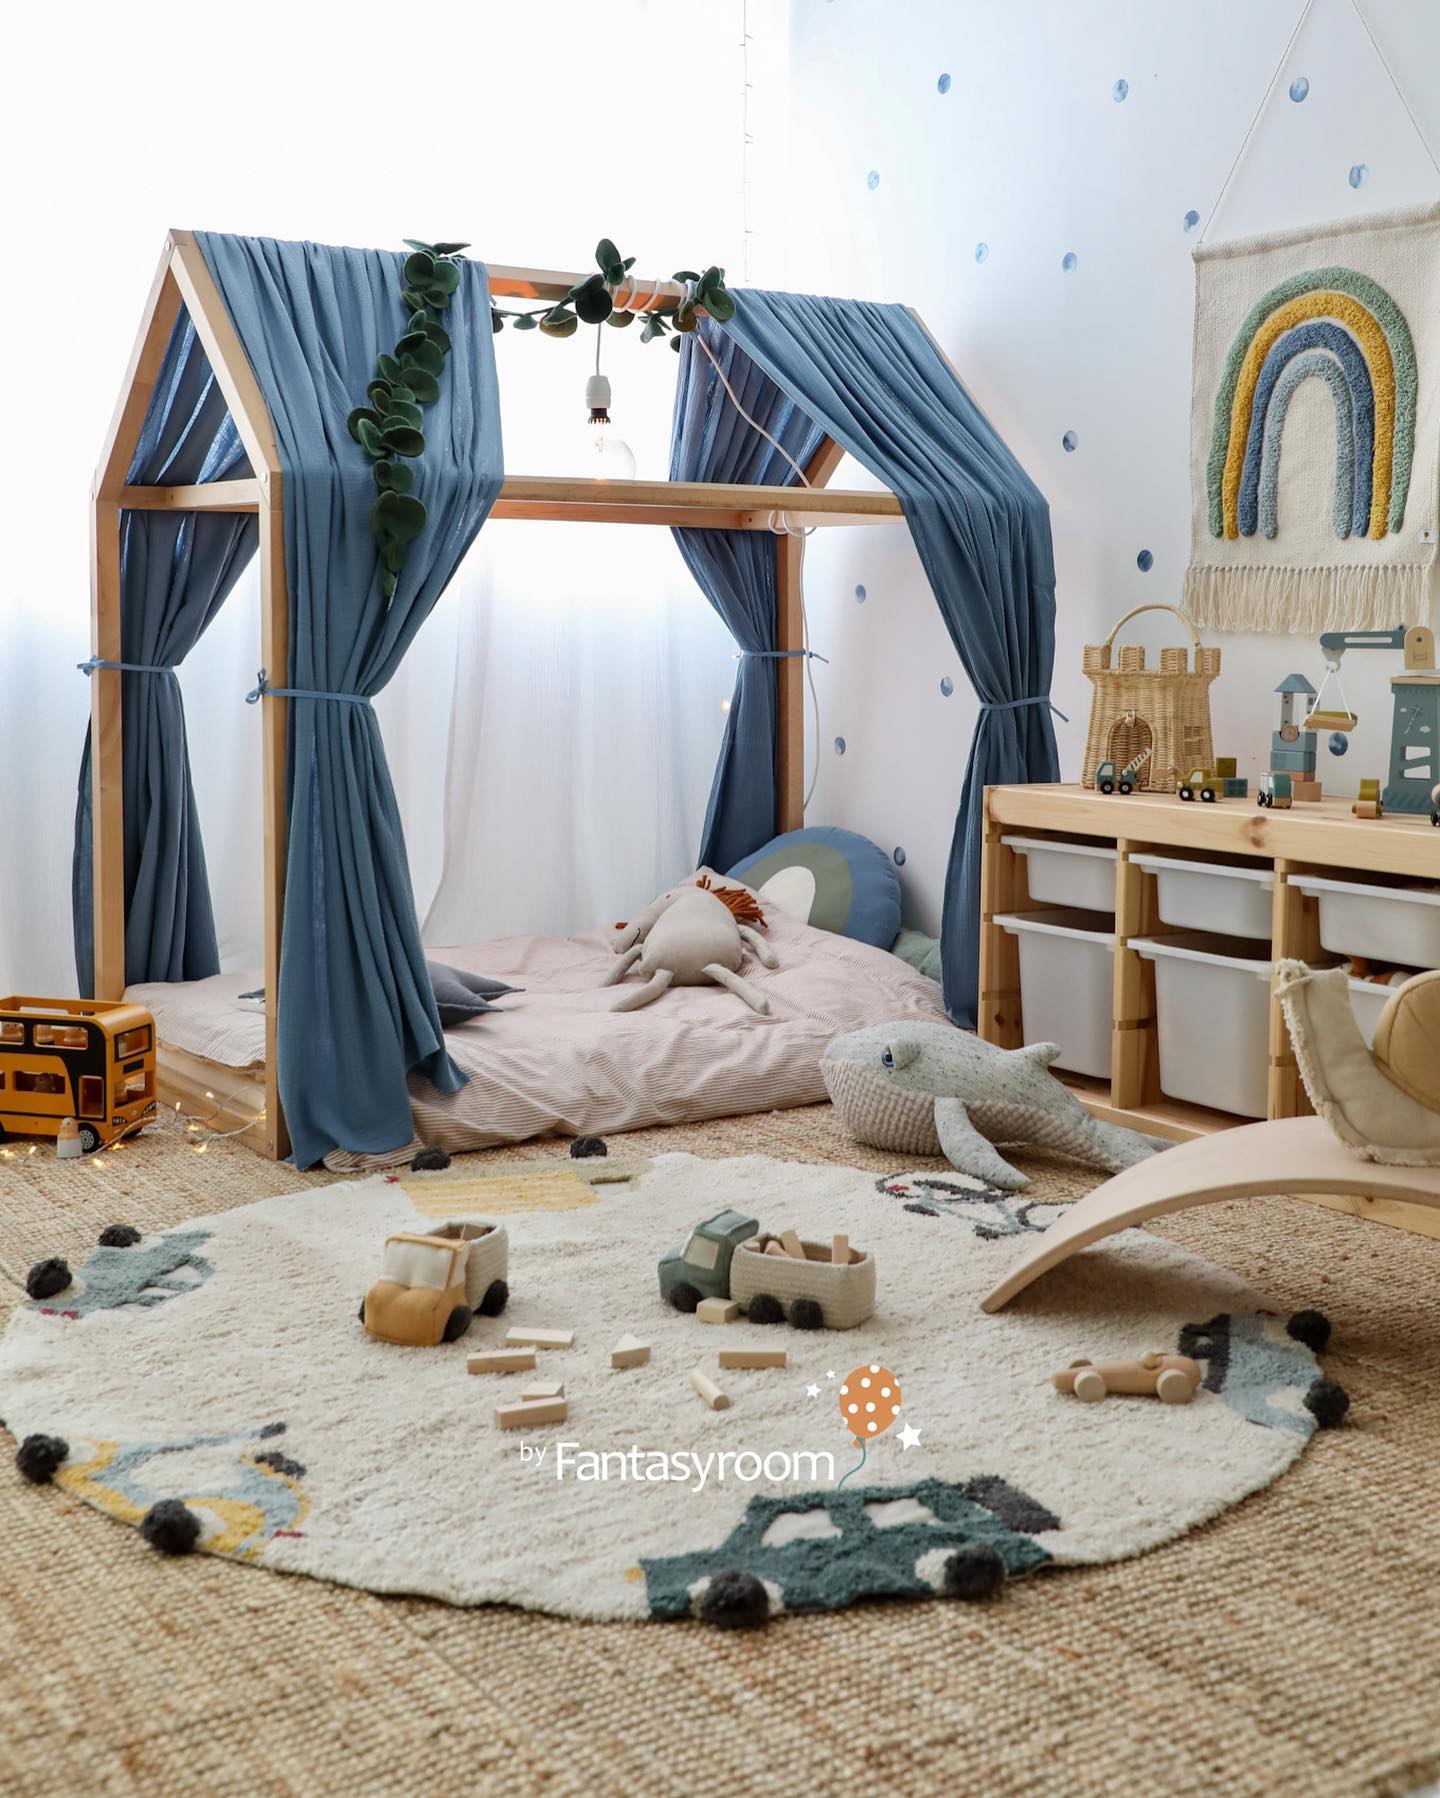 Kinderzimmer für Klein- und Kindergartenkinder einzurichten macht einfach so viel Freude! 🤩🙌🏻 Welche Inspiration wünscht ihr euch als Nächstes?⁠
⁠
Link zu diesem Zimmer zum Nachstylen haben wir in unserem Profil für euch. ⬆️⁠
my-fantasyroom.de ✨⁠
.⁠
.⁠
.⁠
#myfantasyroom #fantasyroomdeko #dinkiballoon #kinderzimmer #kleinkindzimmer #hausbett #kinderbett #kinderteppich #lorenacanals #spielzimmer #spielzeug #kinderspielzeug #holzspielzeug #kidsroom #playroom #playroomdecor #playroominspo #playroomideas #playroomdesign #playroomgoals #toys #kidstoys #woodentoys #kidsinterior #kidsinteriorstyling #nurserytoys #kinderkamer #barnrum #playtime #playroominspiration